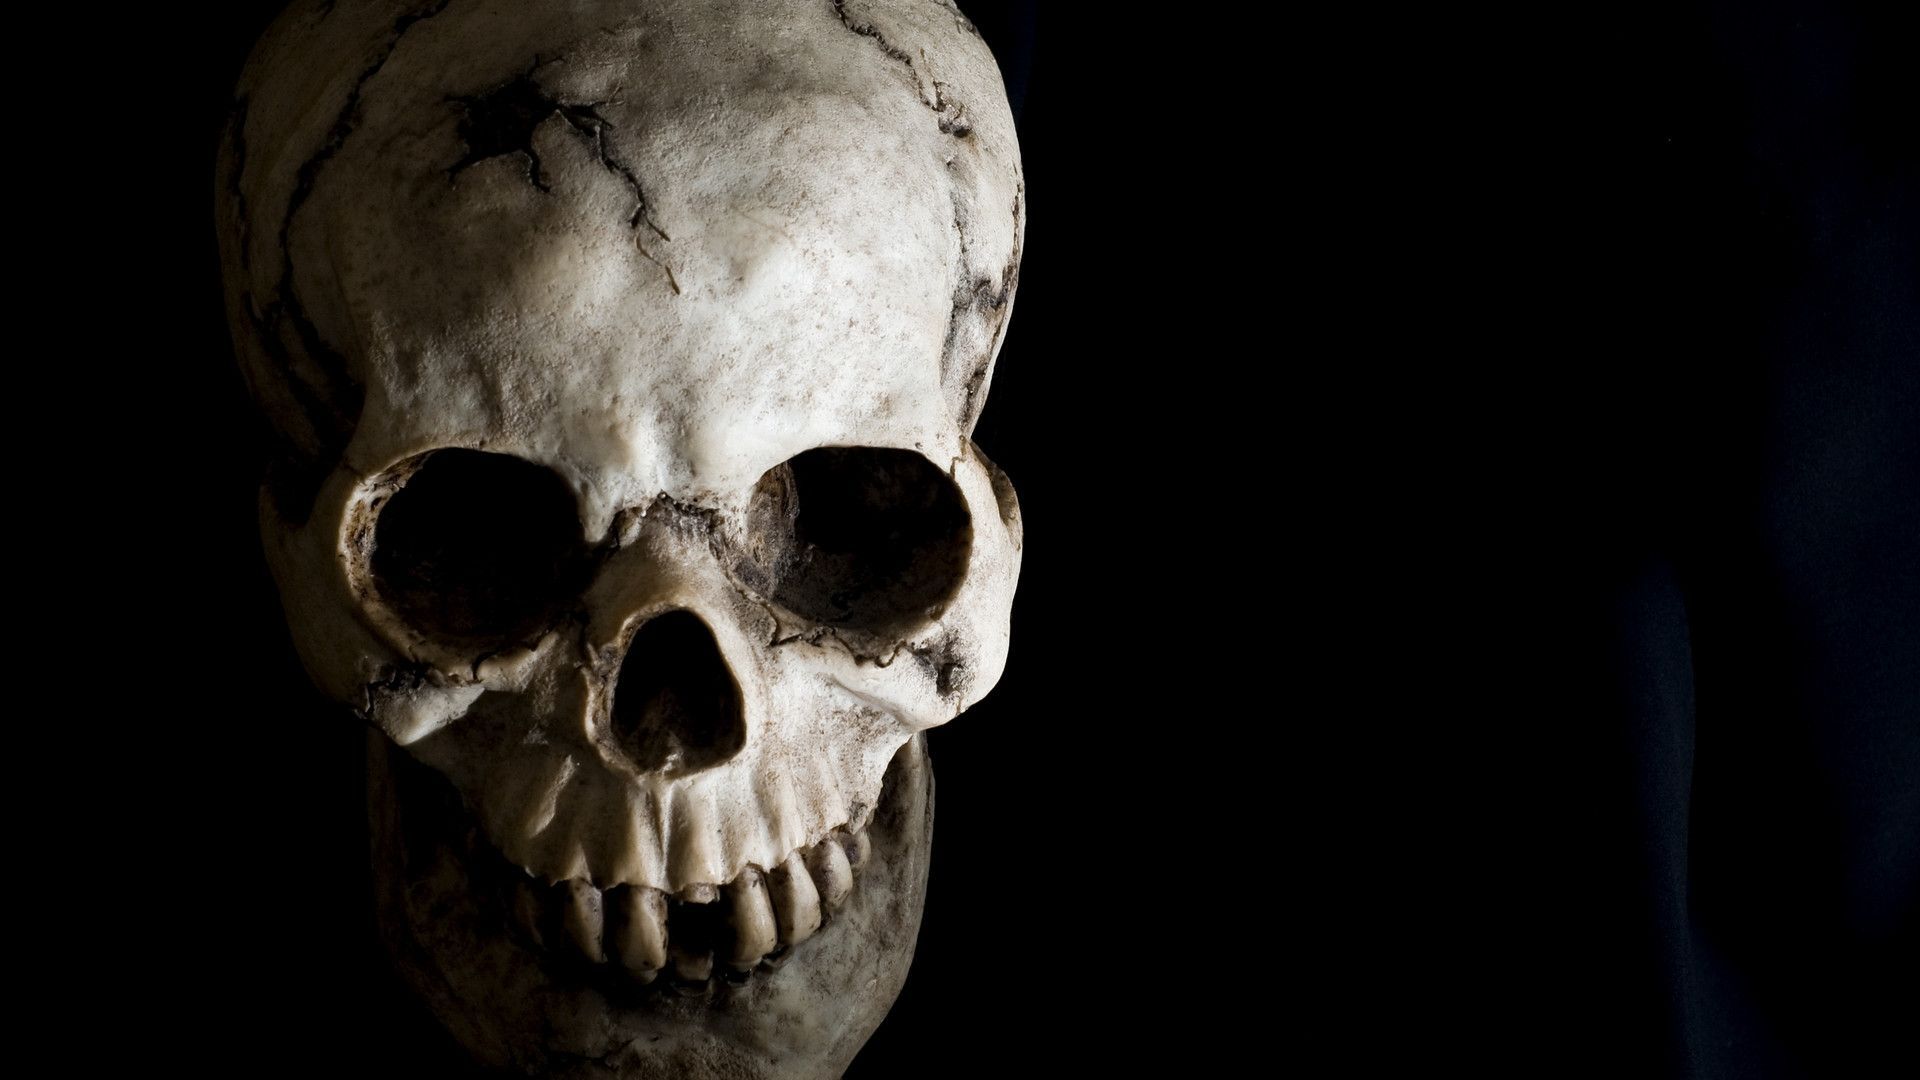 Spectacular Wallpaper (1080p unmarked). Skull, Human skull, Human bones